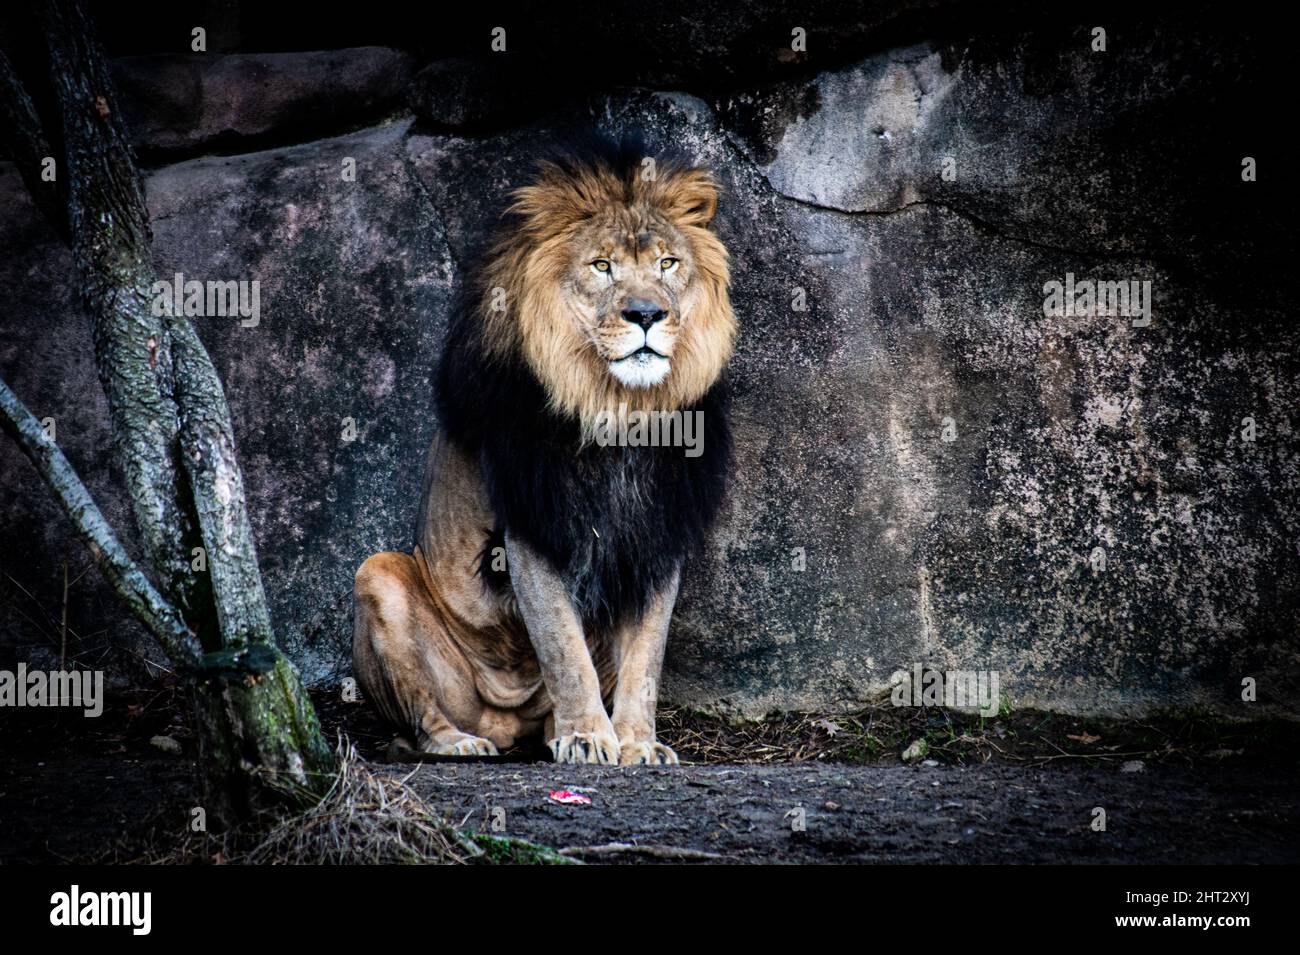 Magnifique lion majestueux dans une grotte Banque D'Images